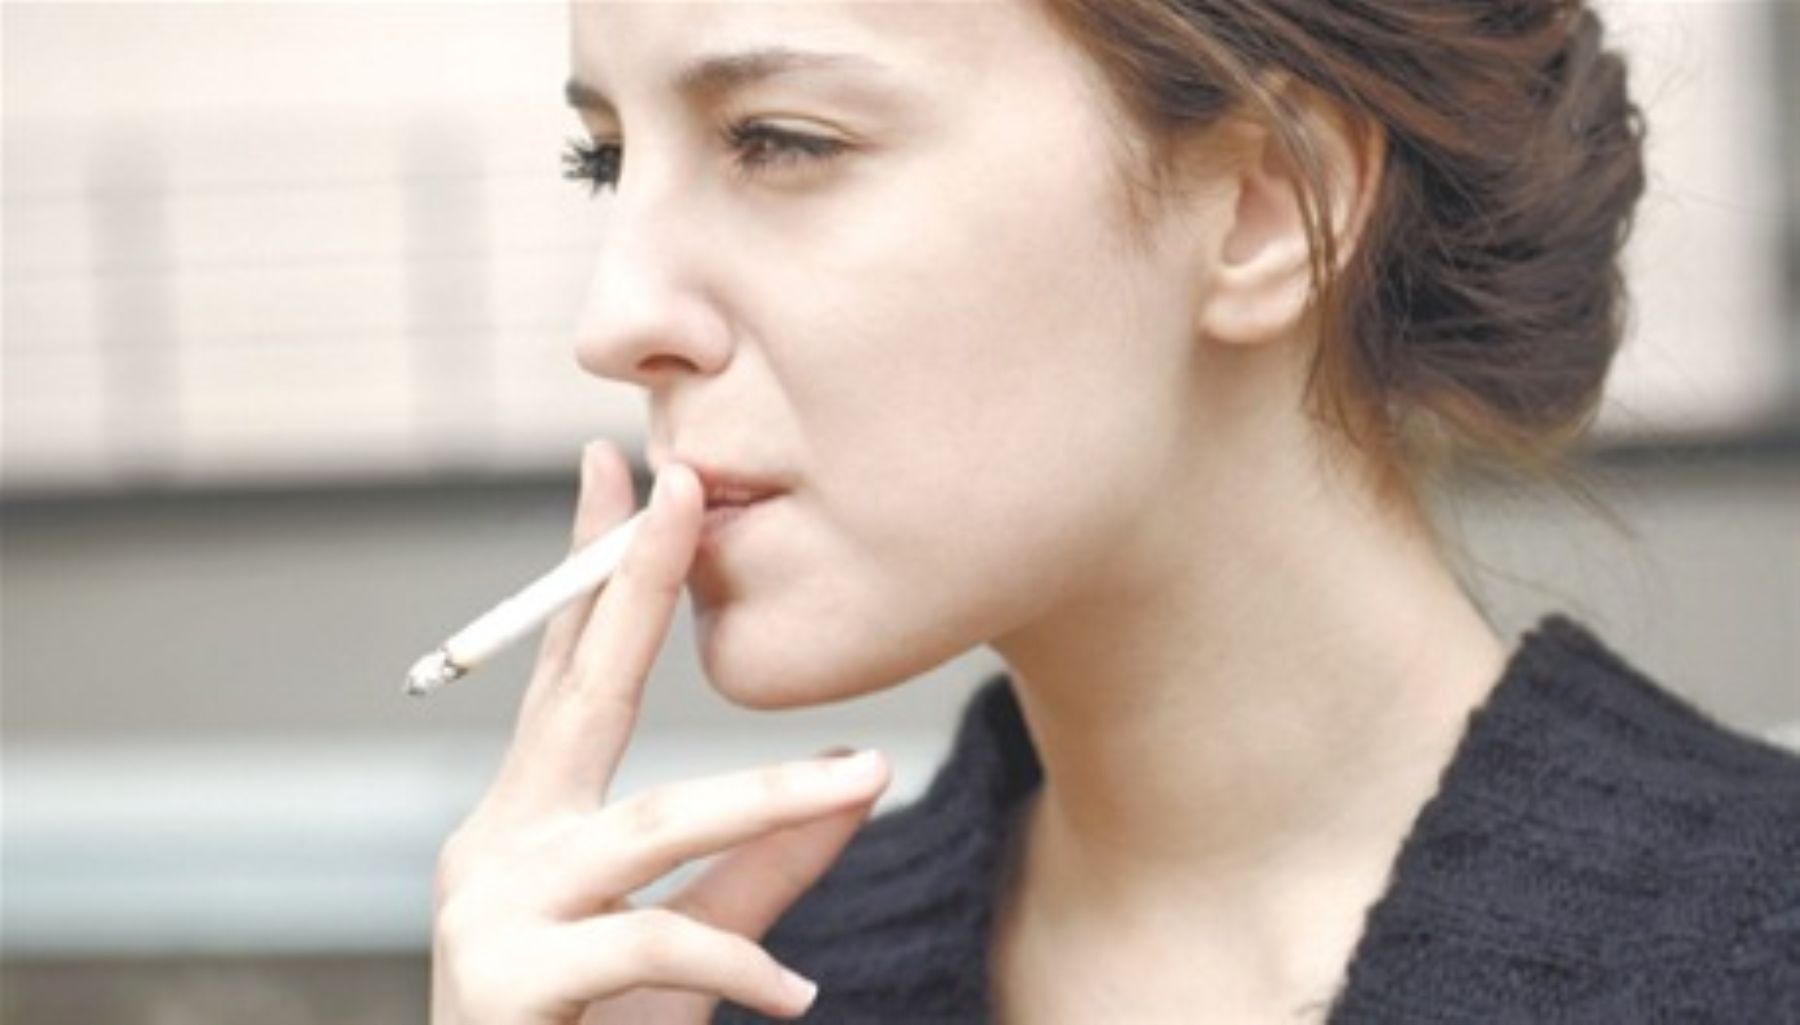 Сон курящий человек. Скарлетт Йоханссон заядлая курильщица. Некурящие знаменитости. Курящие спортсменки.